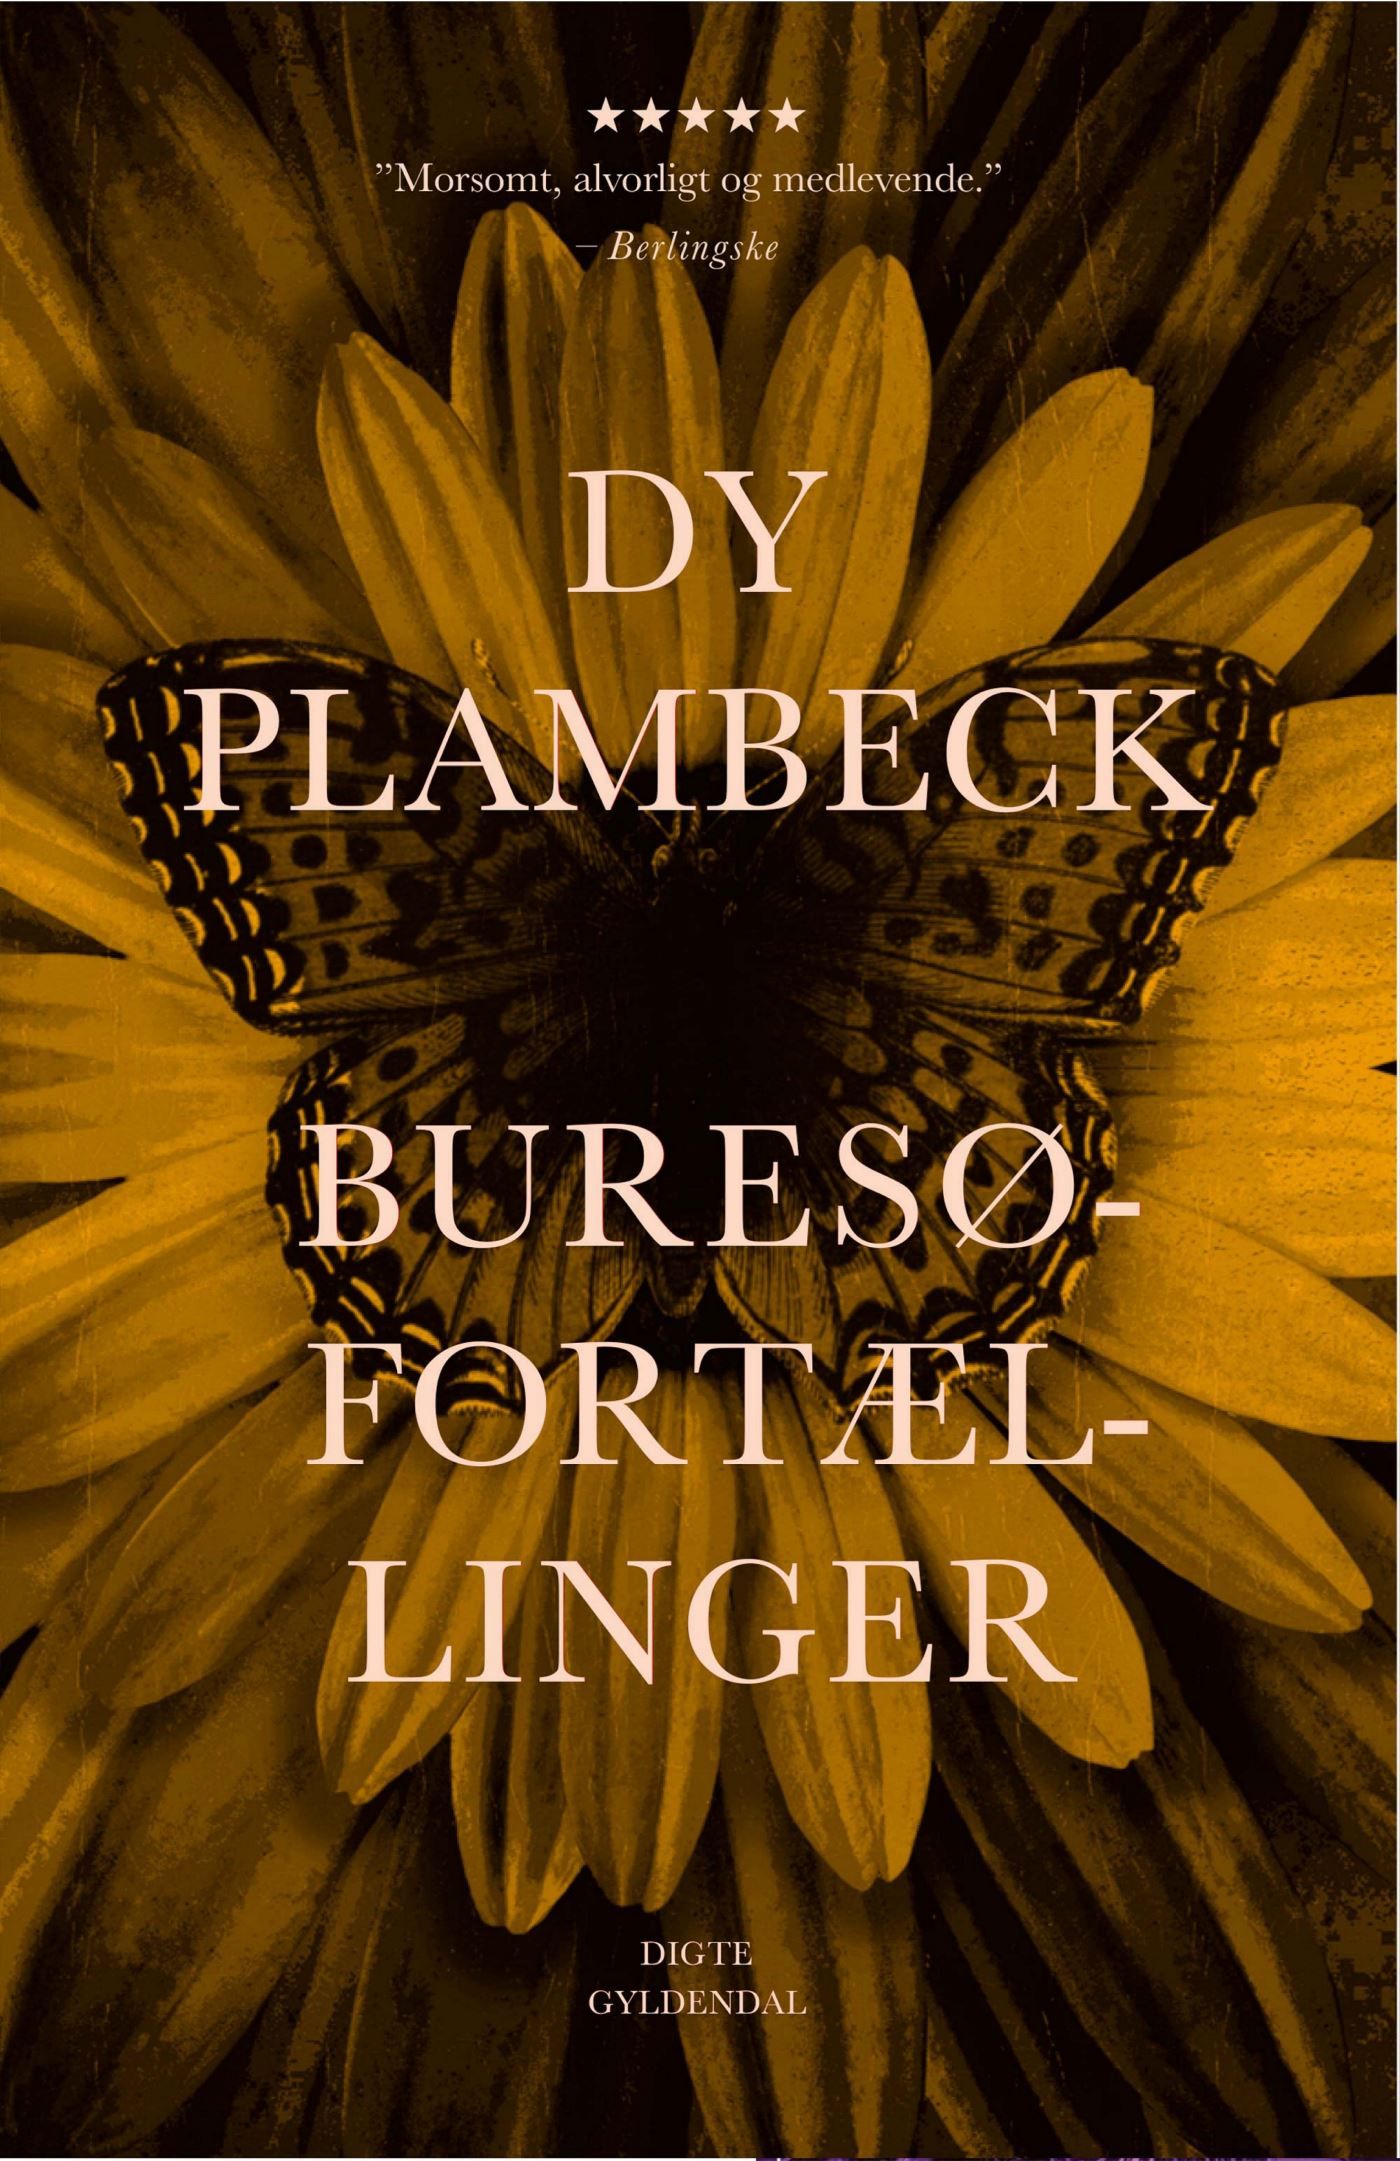 Buresø-fortællinger, lydbog af Dy Plambeck